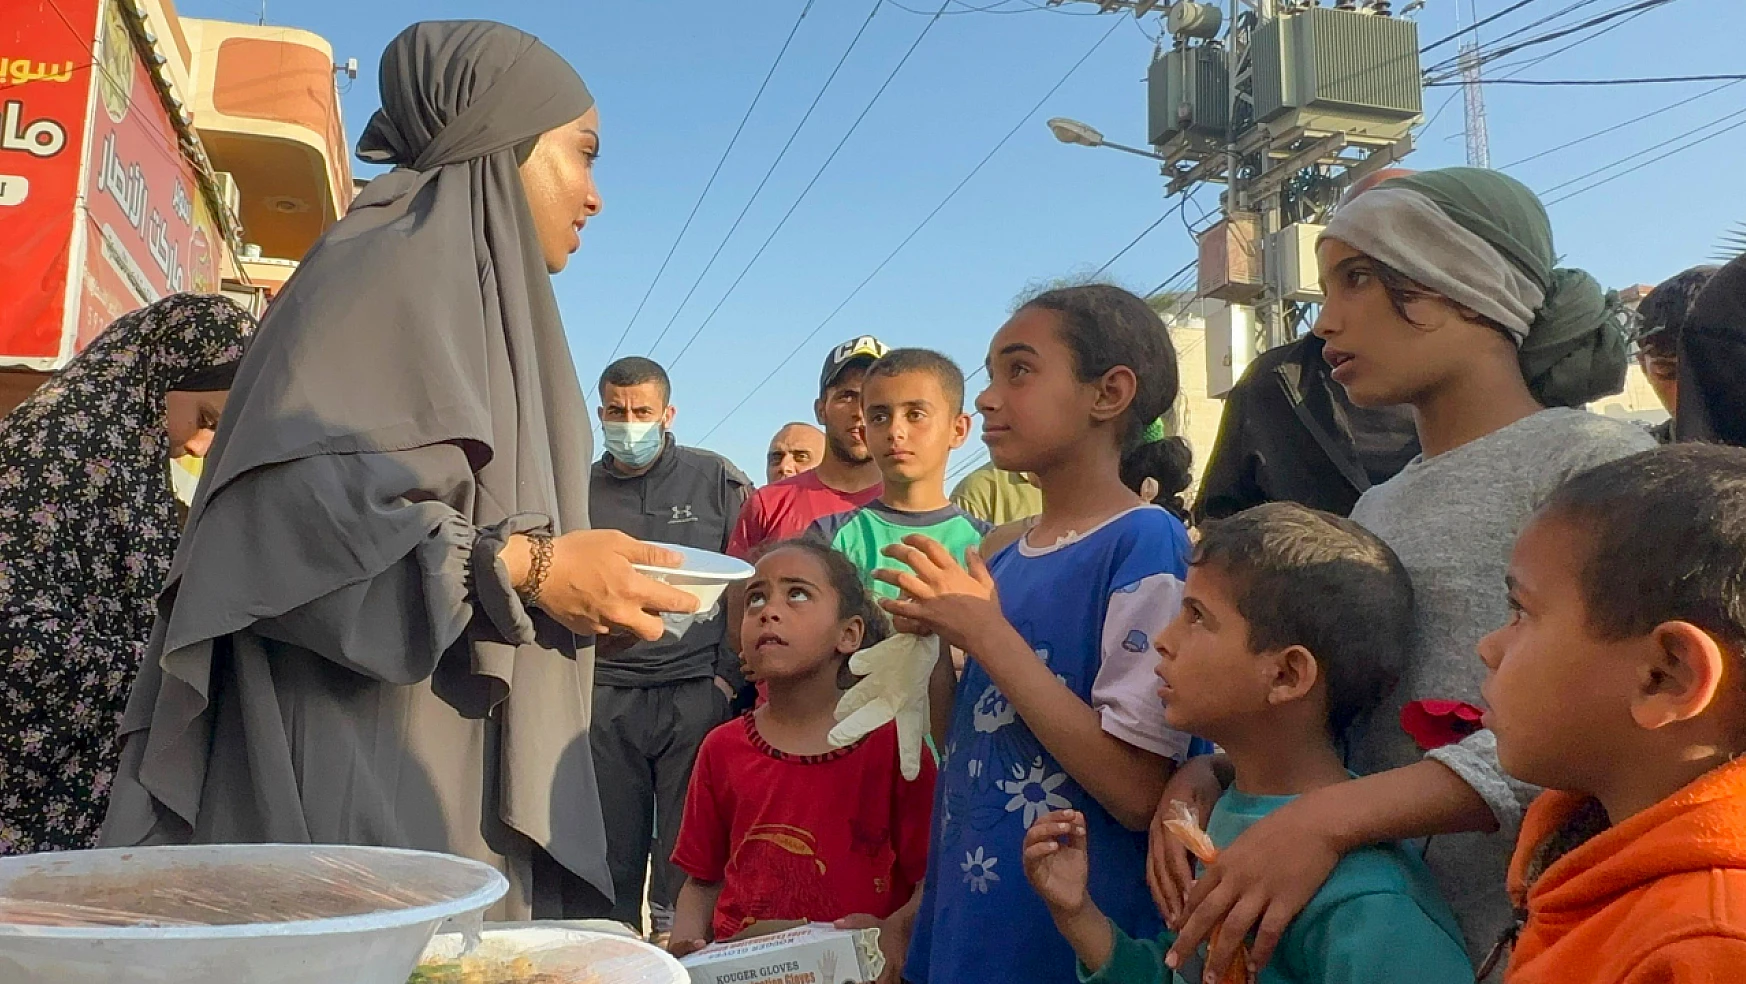 Muhasebe öğrencisi Besma, 'Humus' satarak ailesinin geçimini sağlıyor